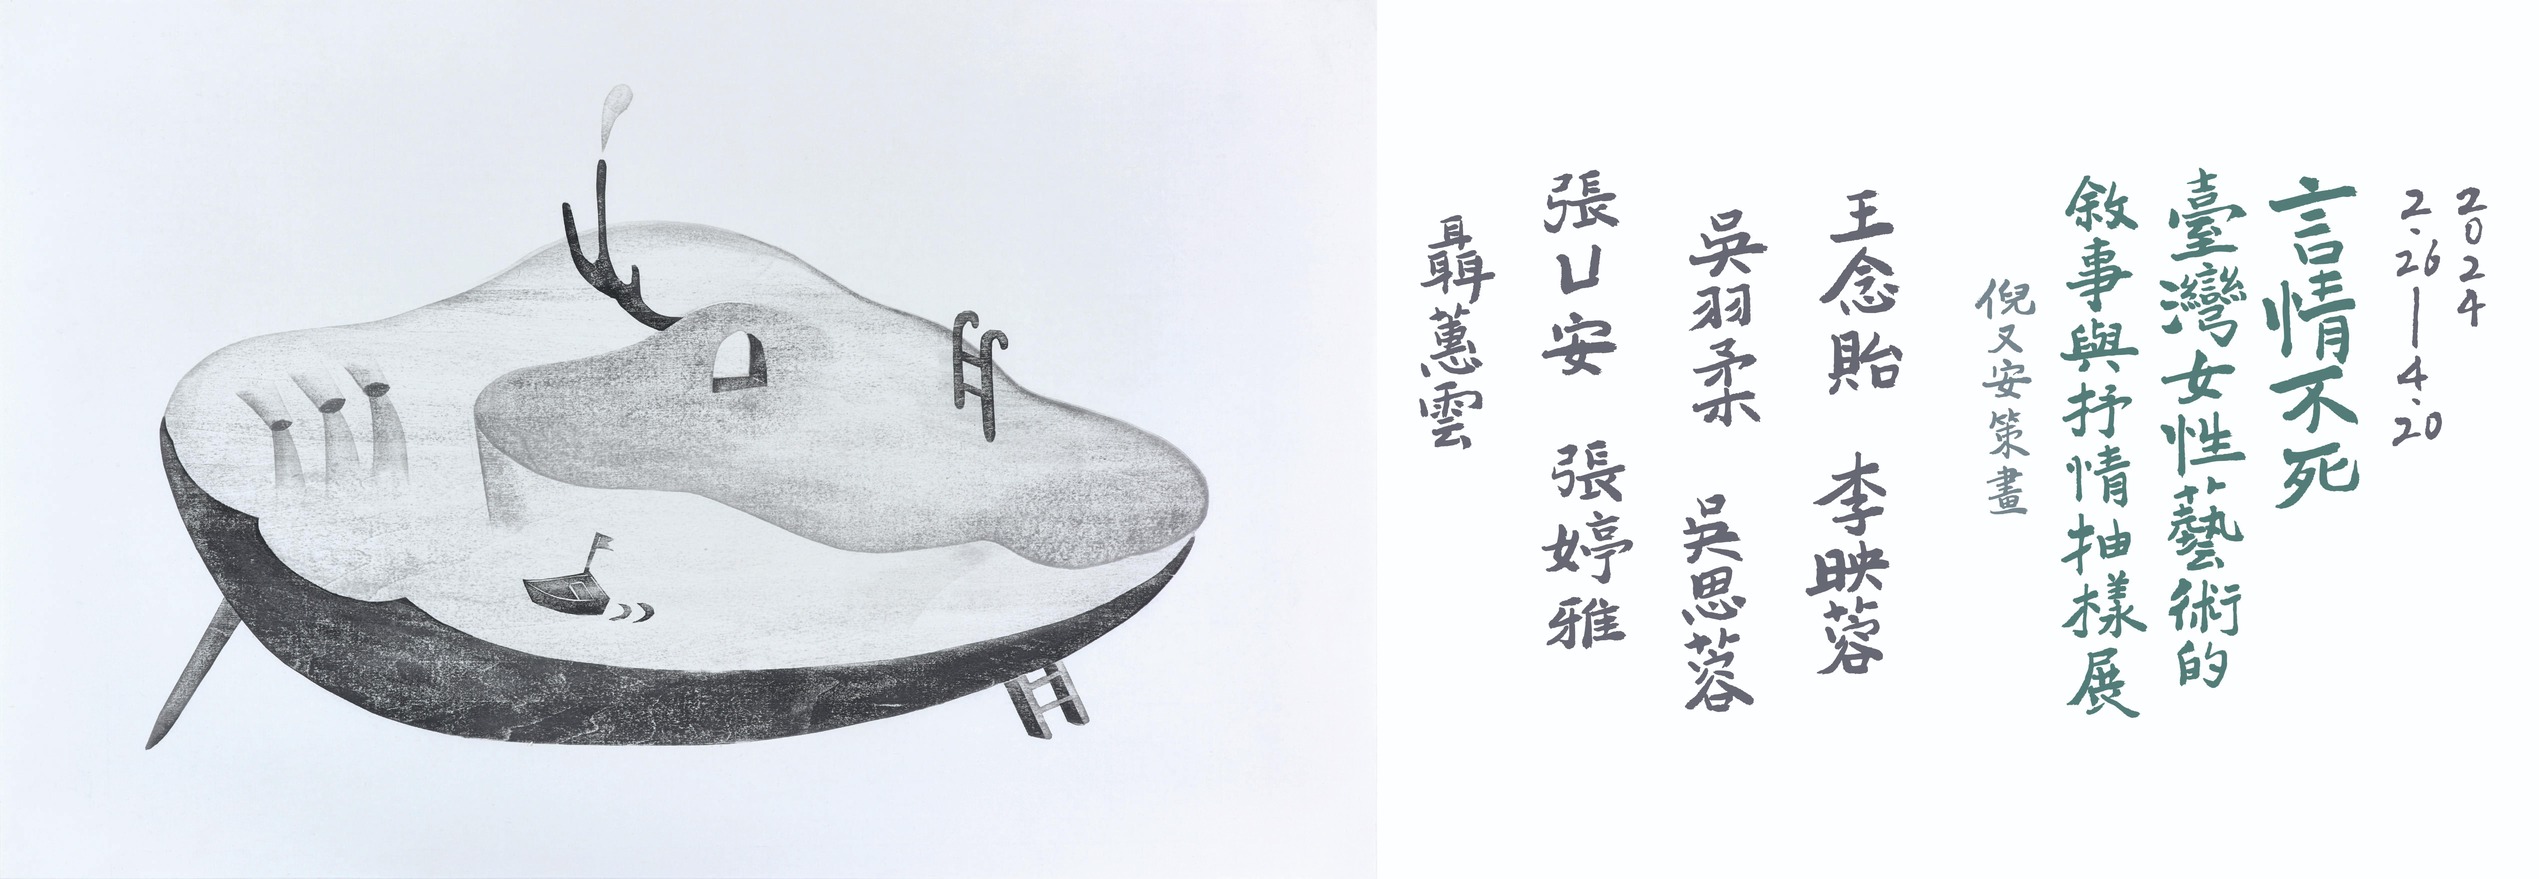 言情不死—— 臺灣女性藝術的敘事與抒情抽樣展